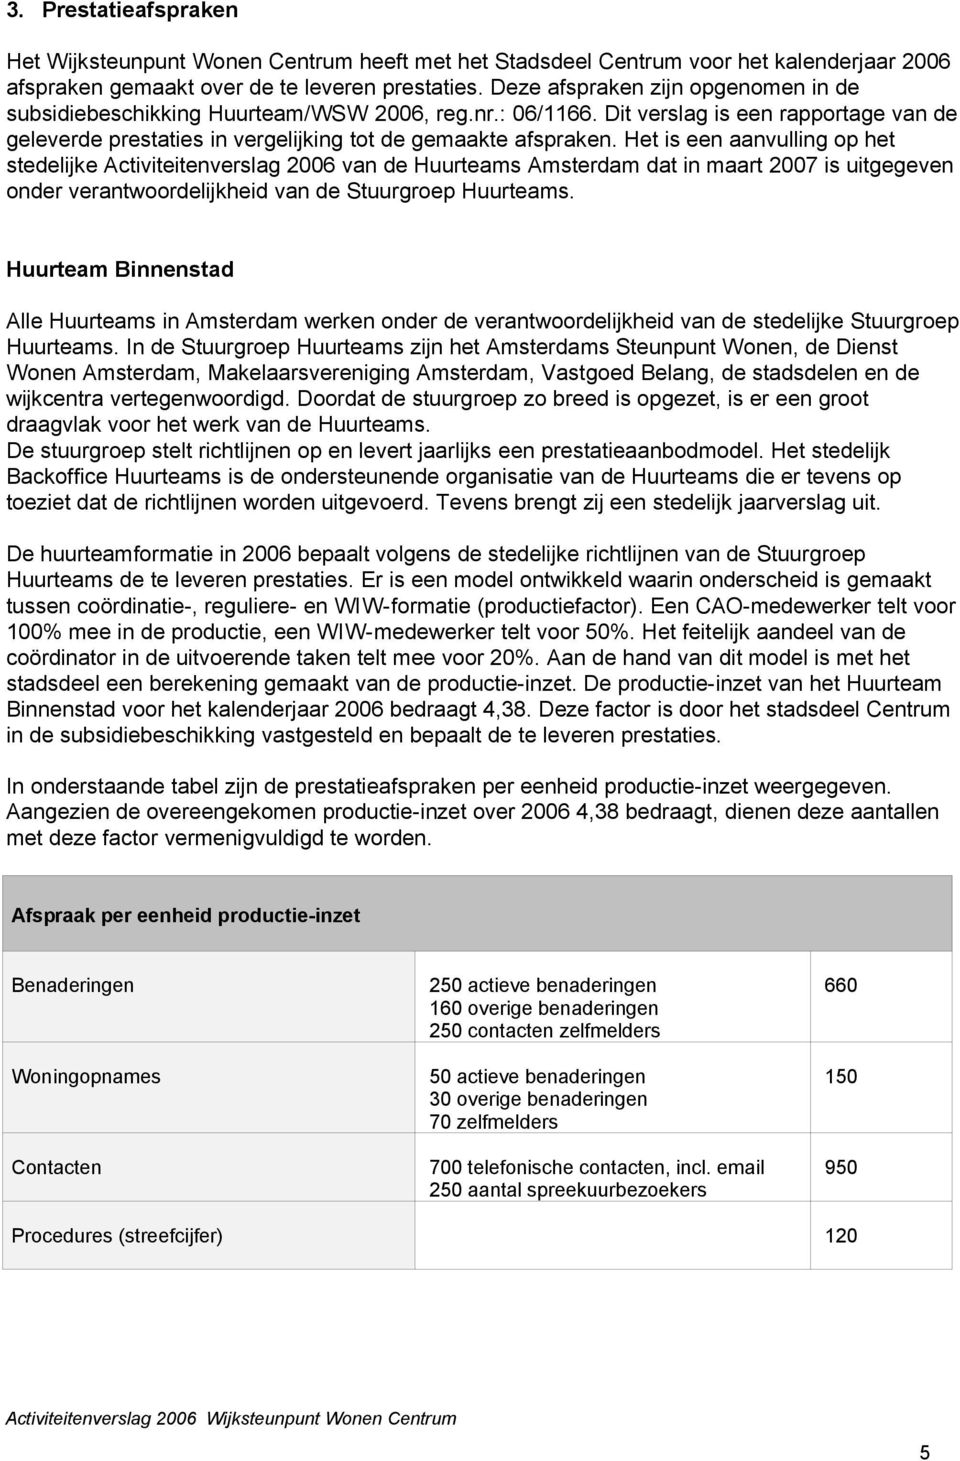 Het is een aanvulling op het stedelijke Activiteitenverslag 2006 van de Huurteams Amsterdam dat in maart 2007 is uitgegeven onder verantwoordelijkheid van de Stuurgroep Huurteams.